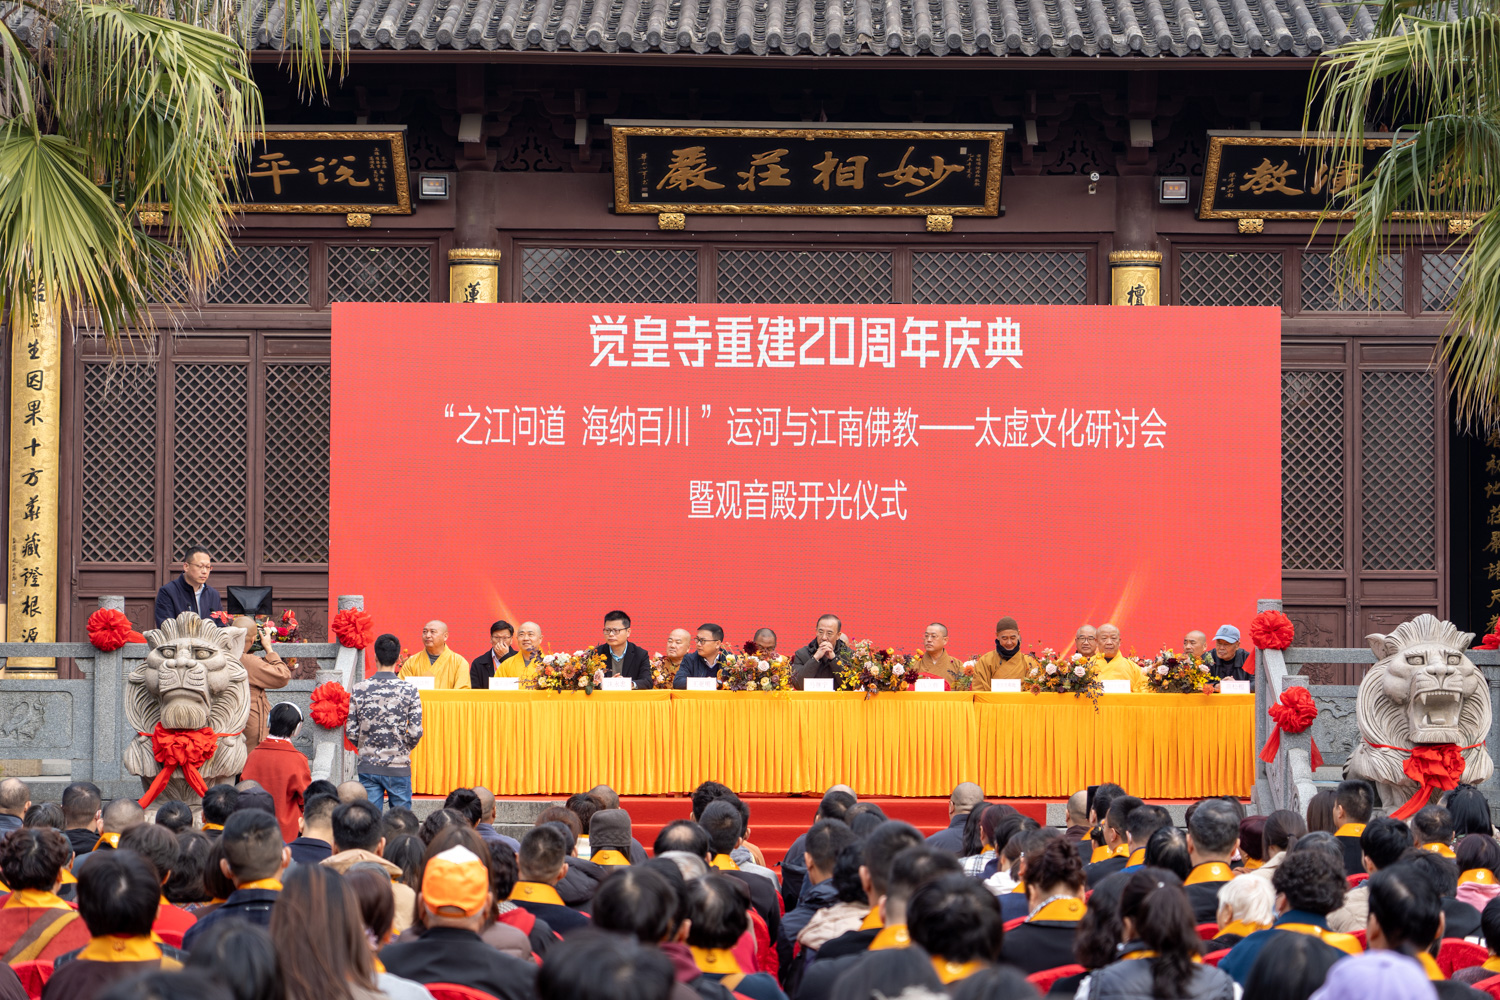 海宁觉皇寺恢复重建二十周年庆典暨太虚文化学术研讨会